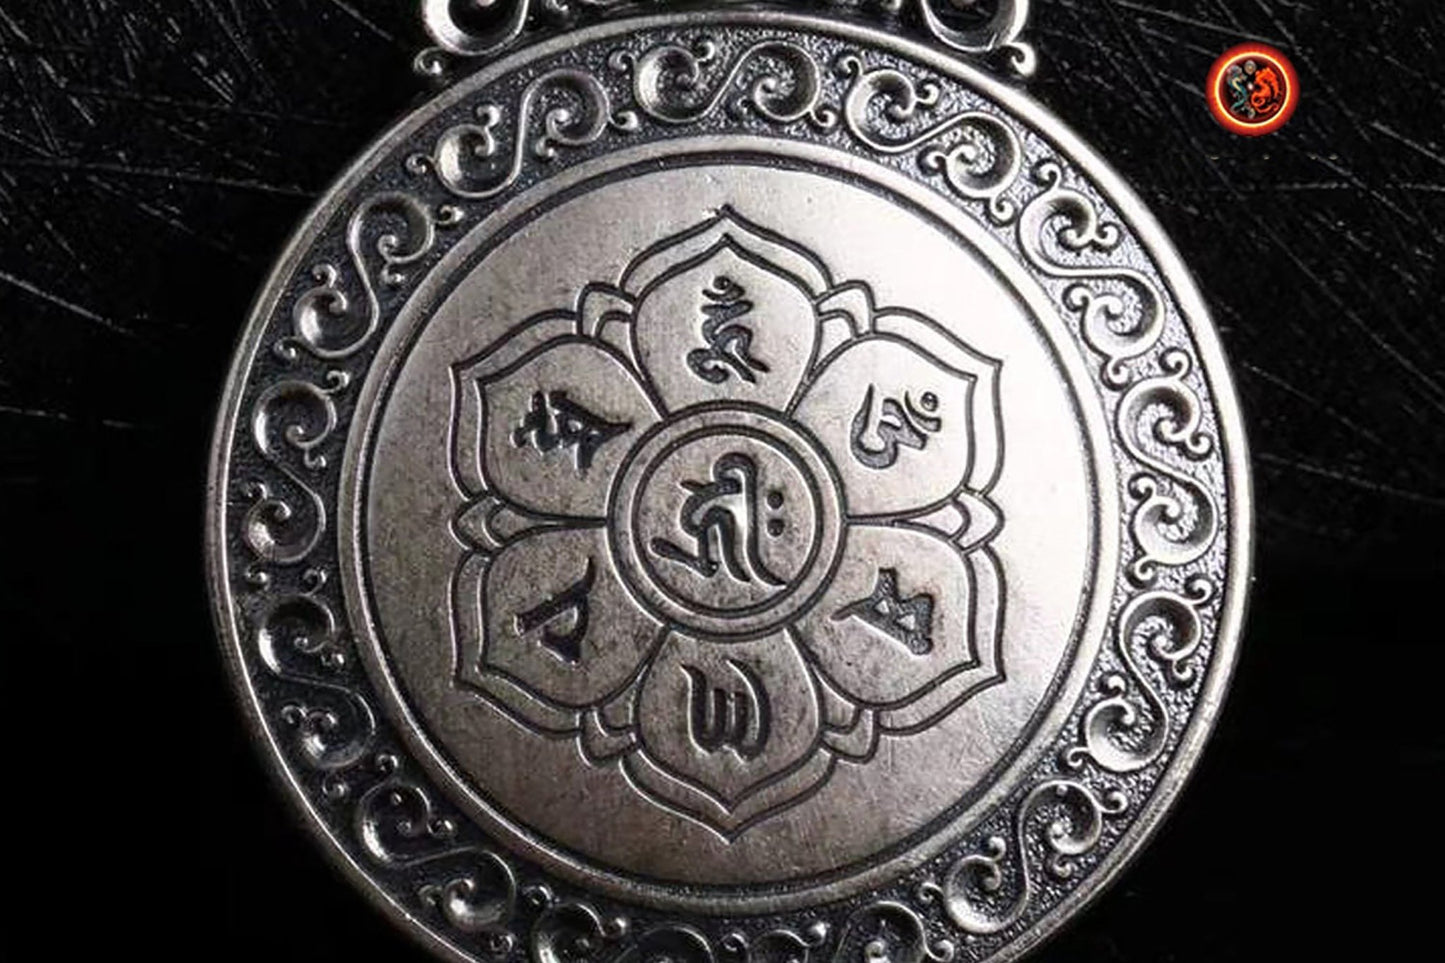 Pendentif,amulette de protection bouddhiste, bouddha Kshitigarbha roue tournante au dos du bouddha, mantra tibétain au verso de l'amulette. - obsidian dragon